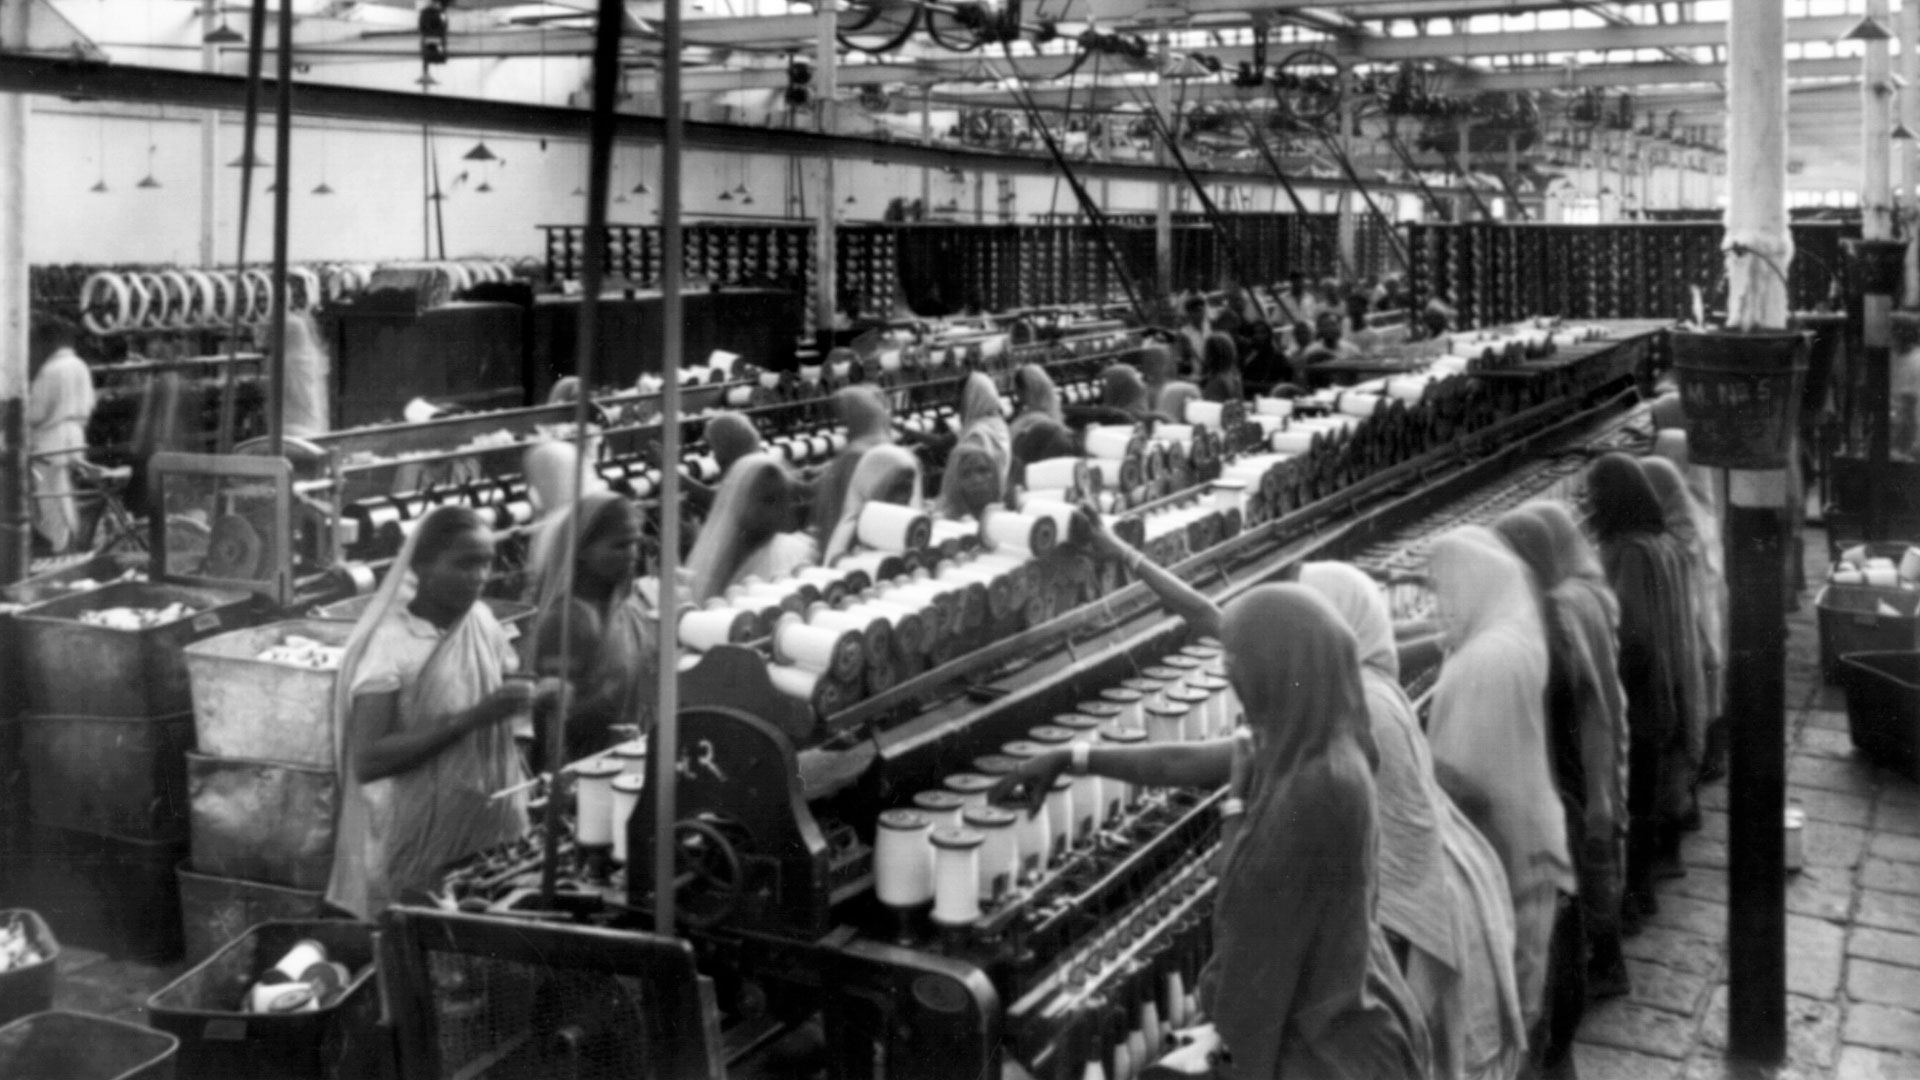 Jamsetji Tata's mills pioneered new technologies and worker welfare initiatives